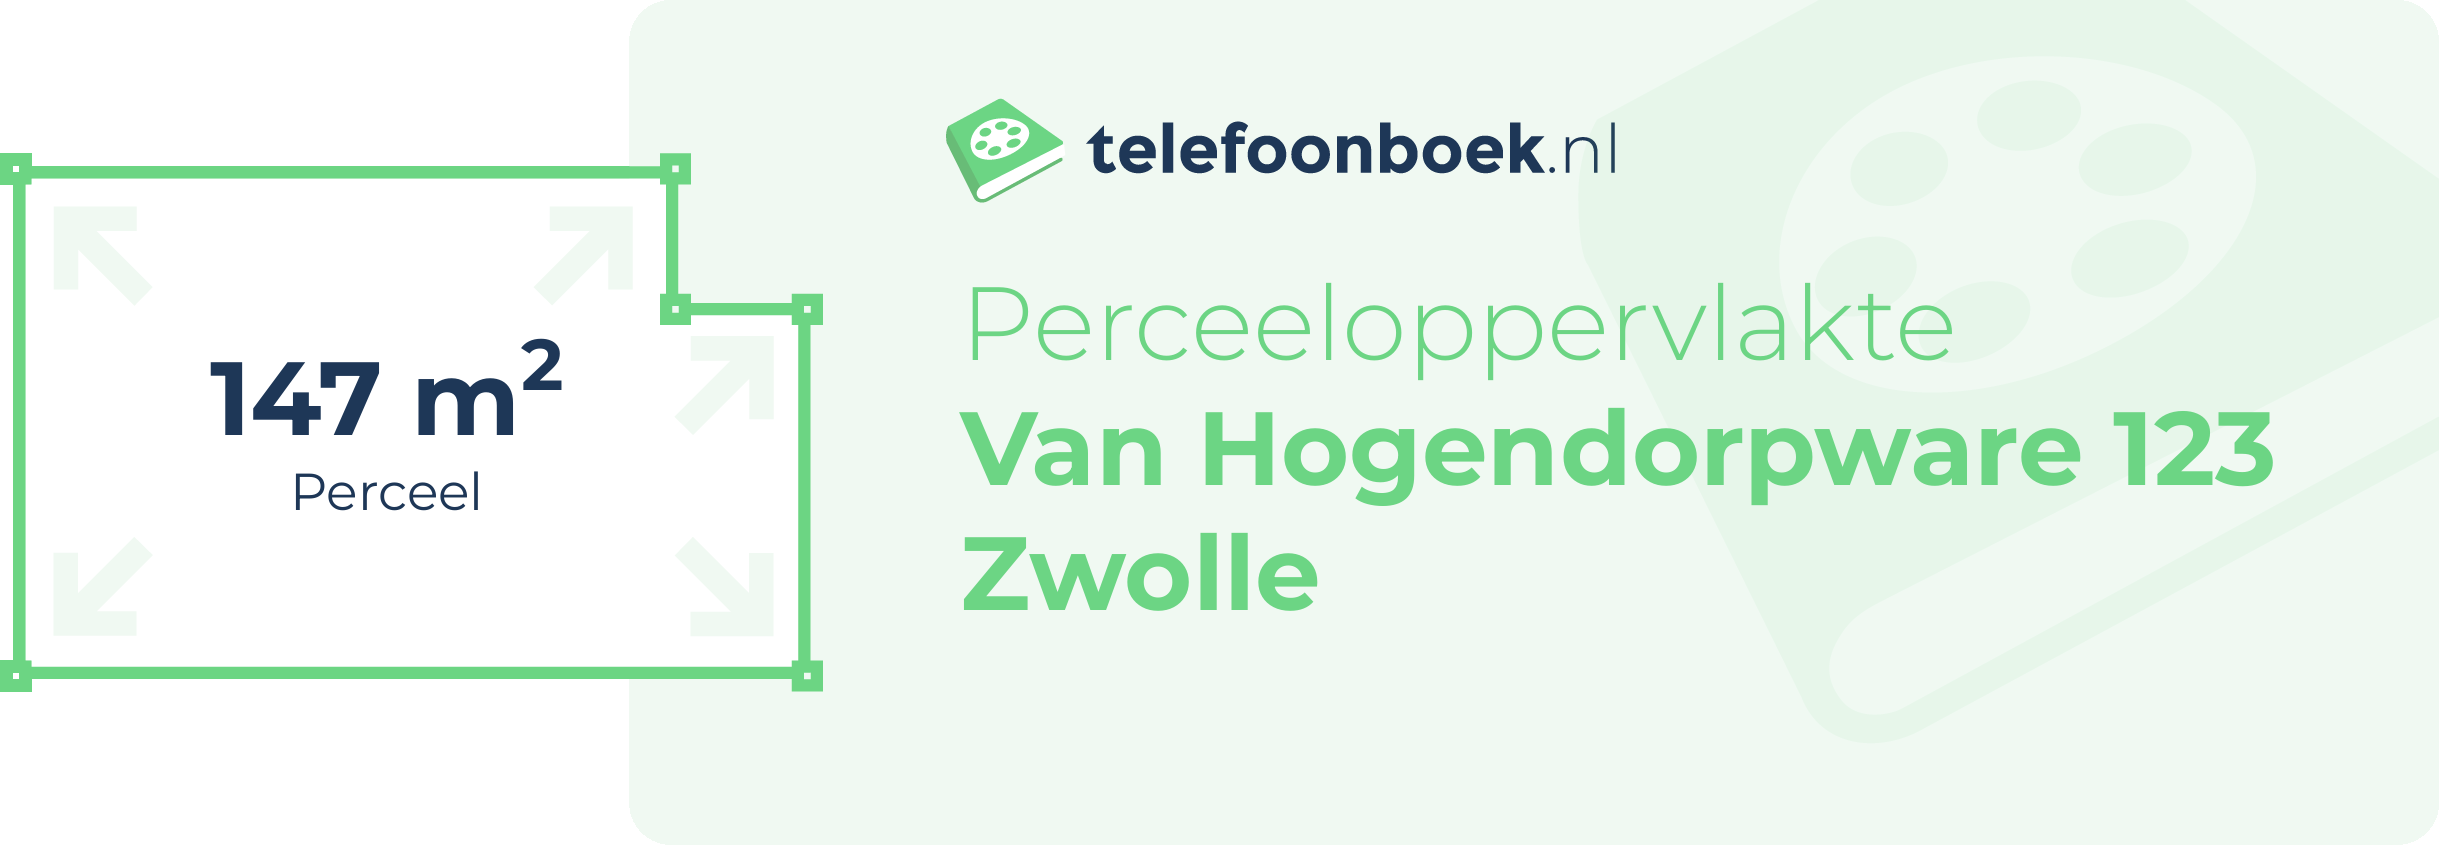 Perceeloppervlakte Van Hogendorpware 123 Zwolle